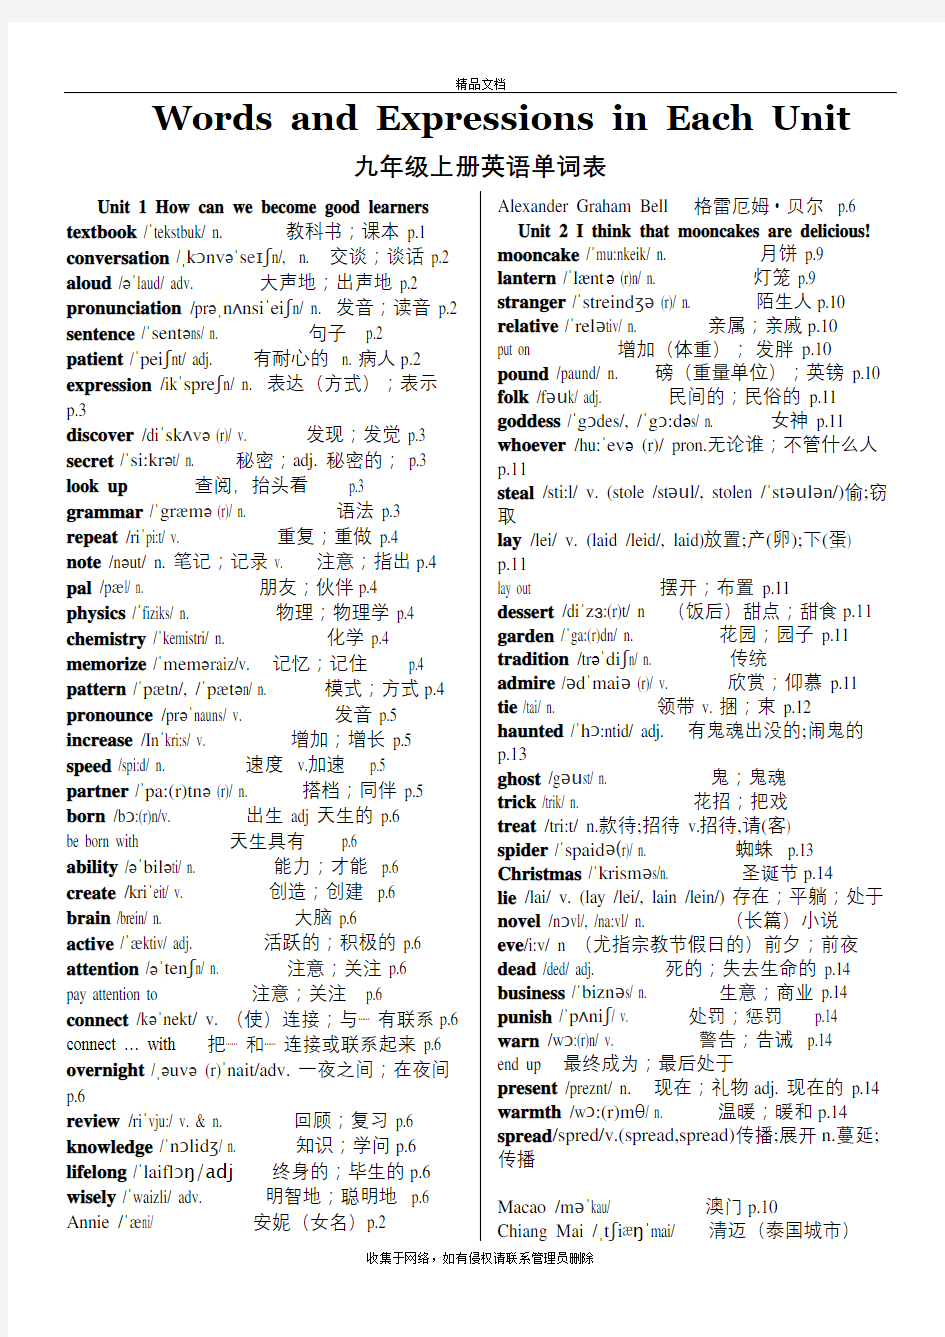 新人教版九年级英语全册各单元单词表(含音标)教程文件